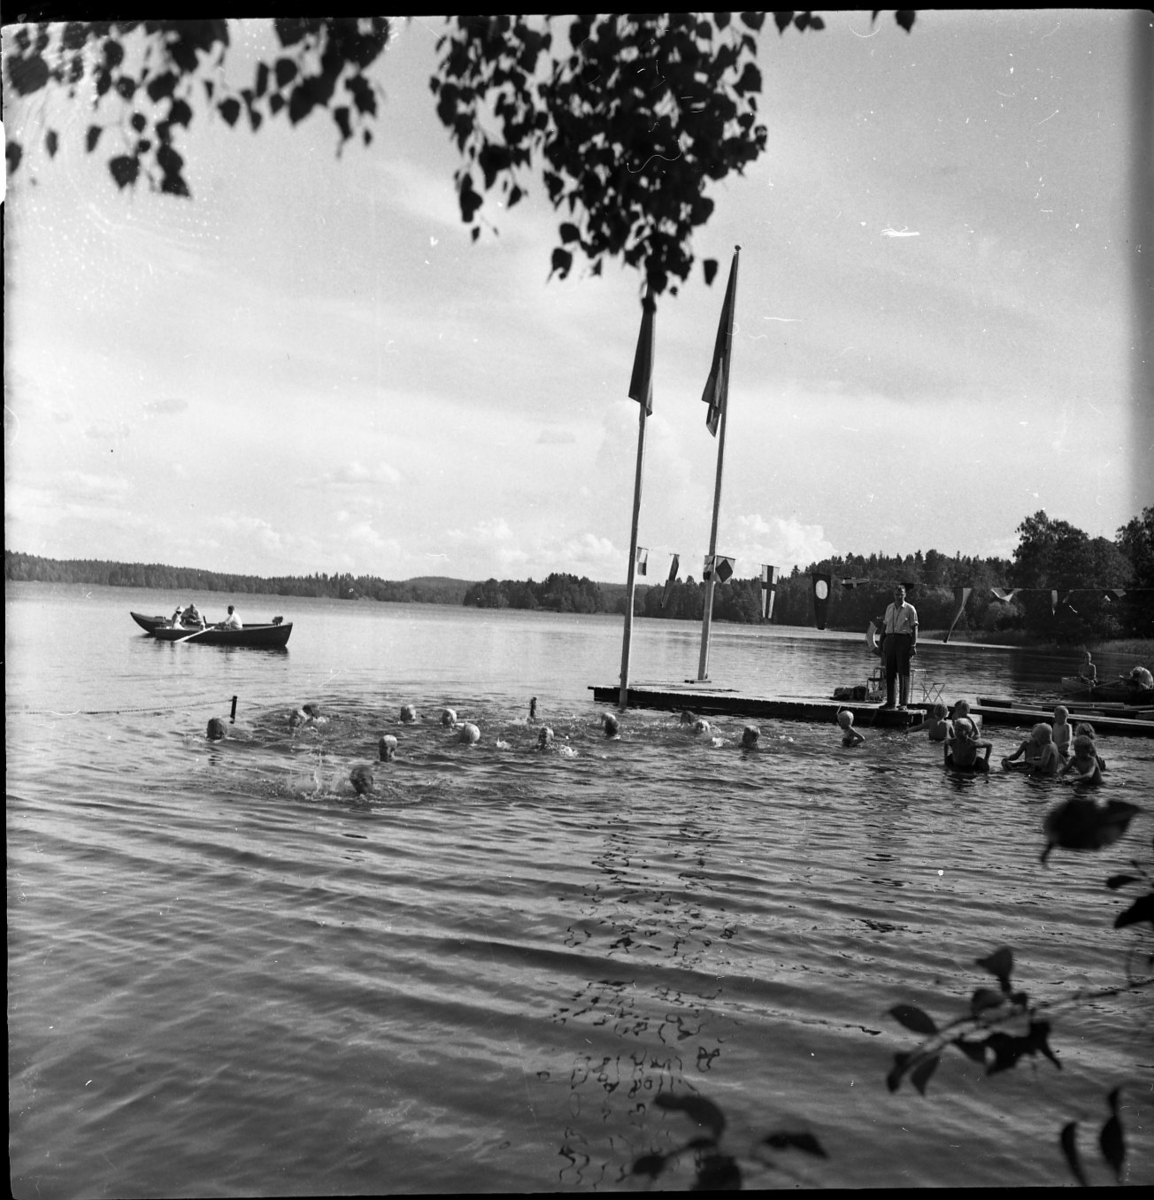 Några barn simmar i en sjö. Det står en simskollärare på en brygga och tittar på. Två flaggstänger står längst ut på bryggan. I bakgrunden syns en roddbåt.